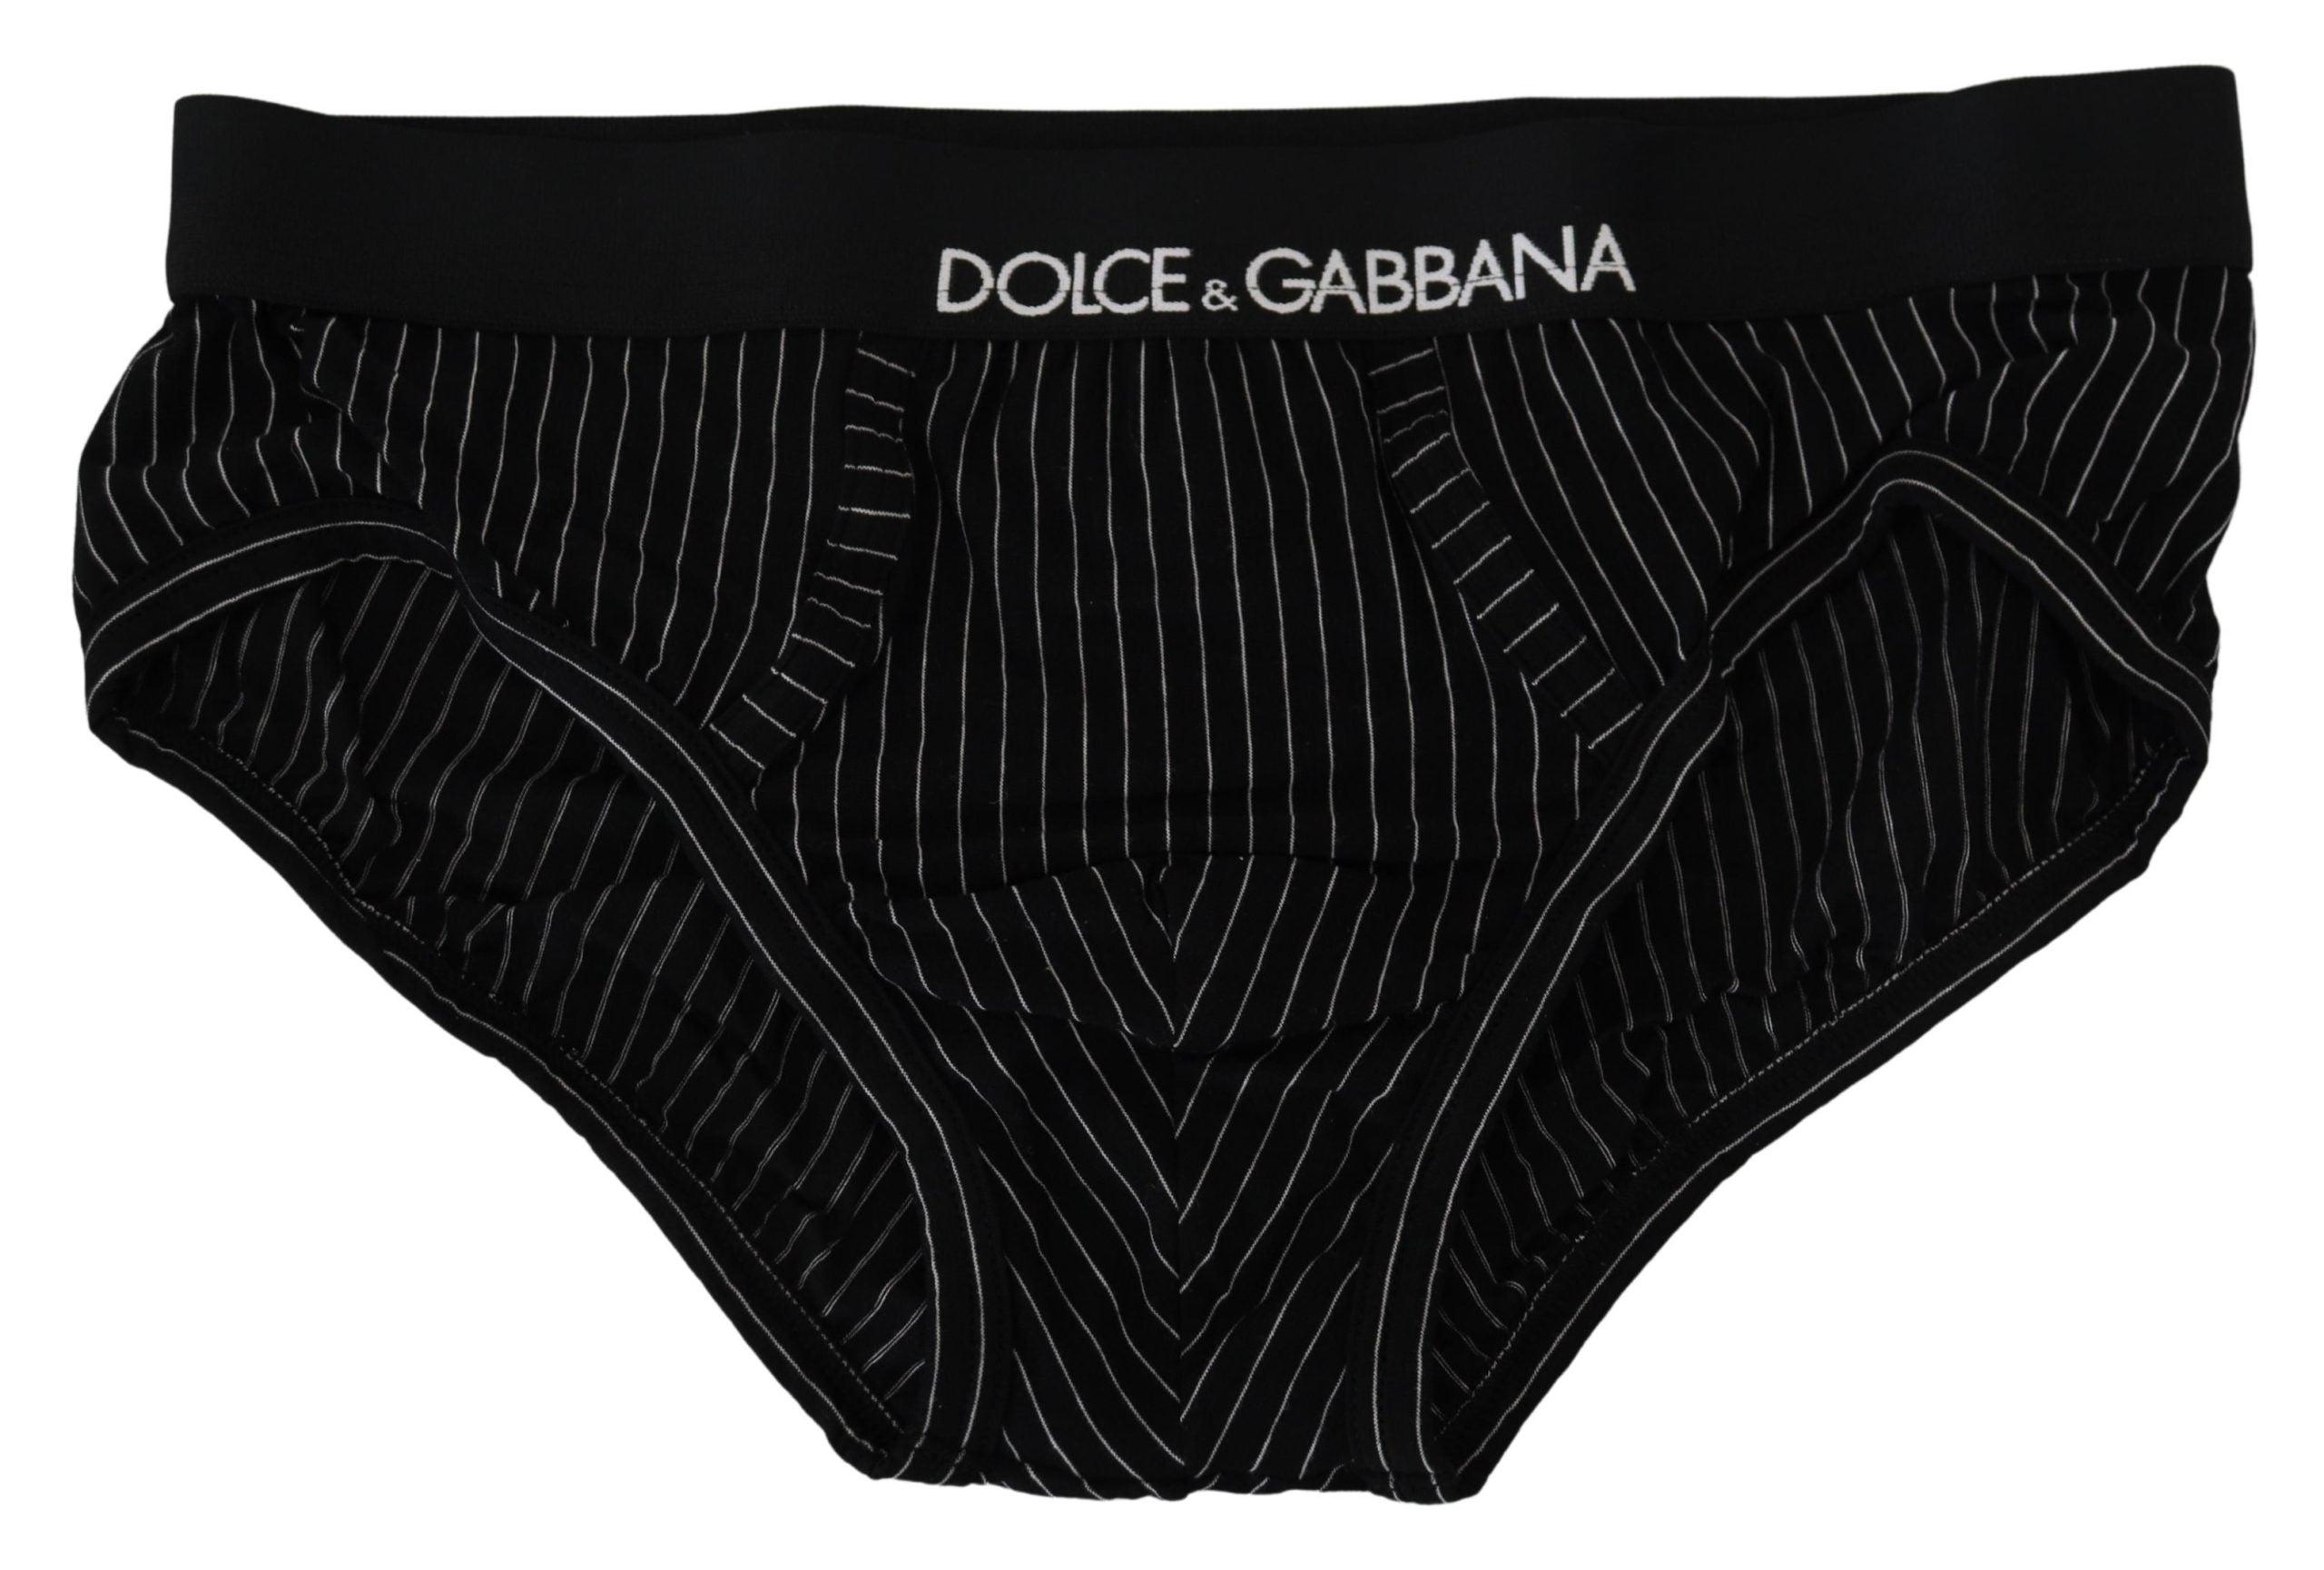 Dolce & Gabbana Black Striped Cotton Brando Brief Underwear for